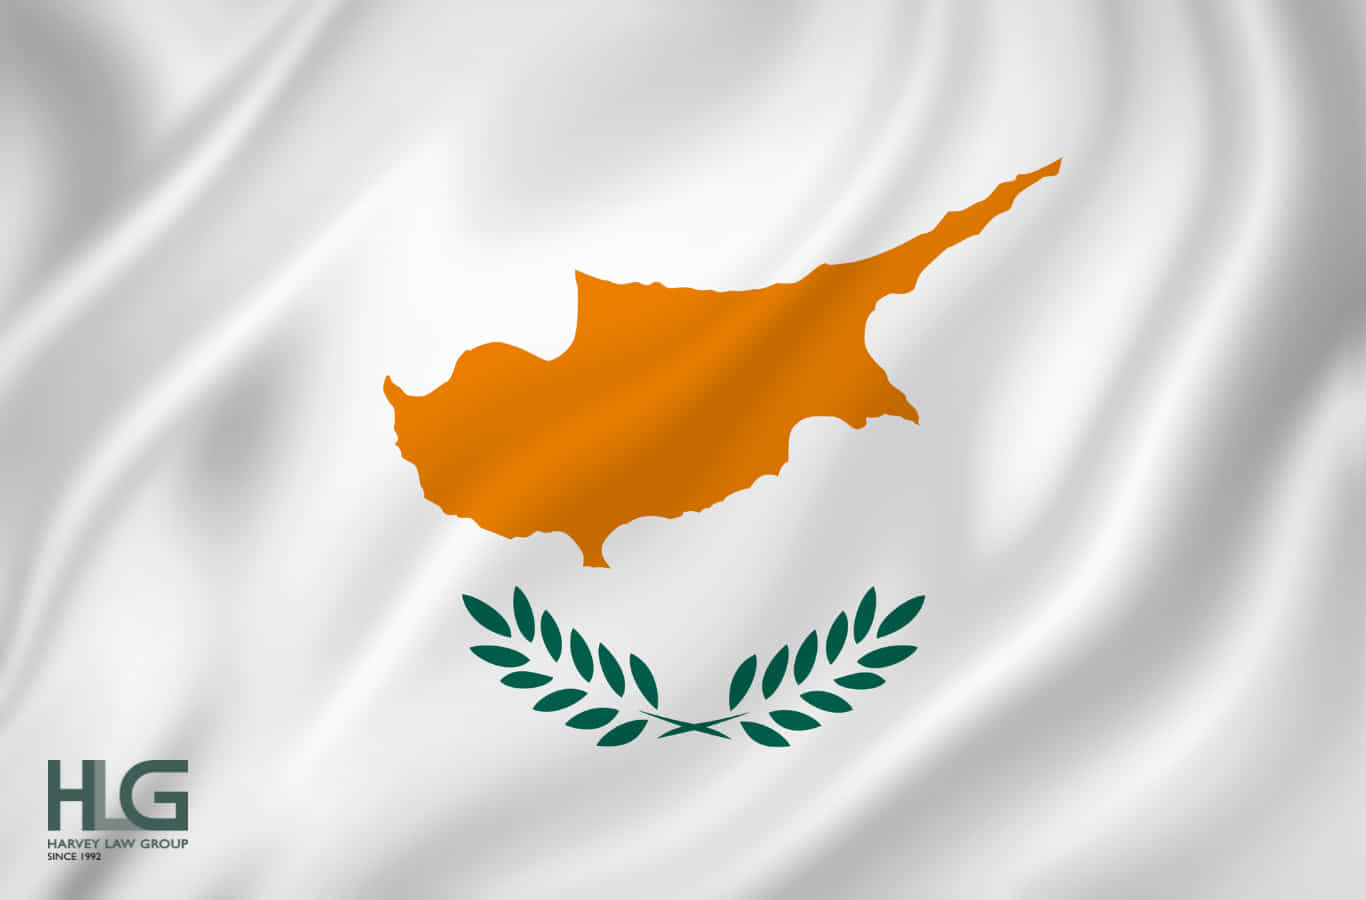 Quốc tịch Síp là gì